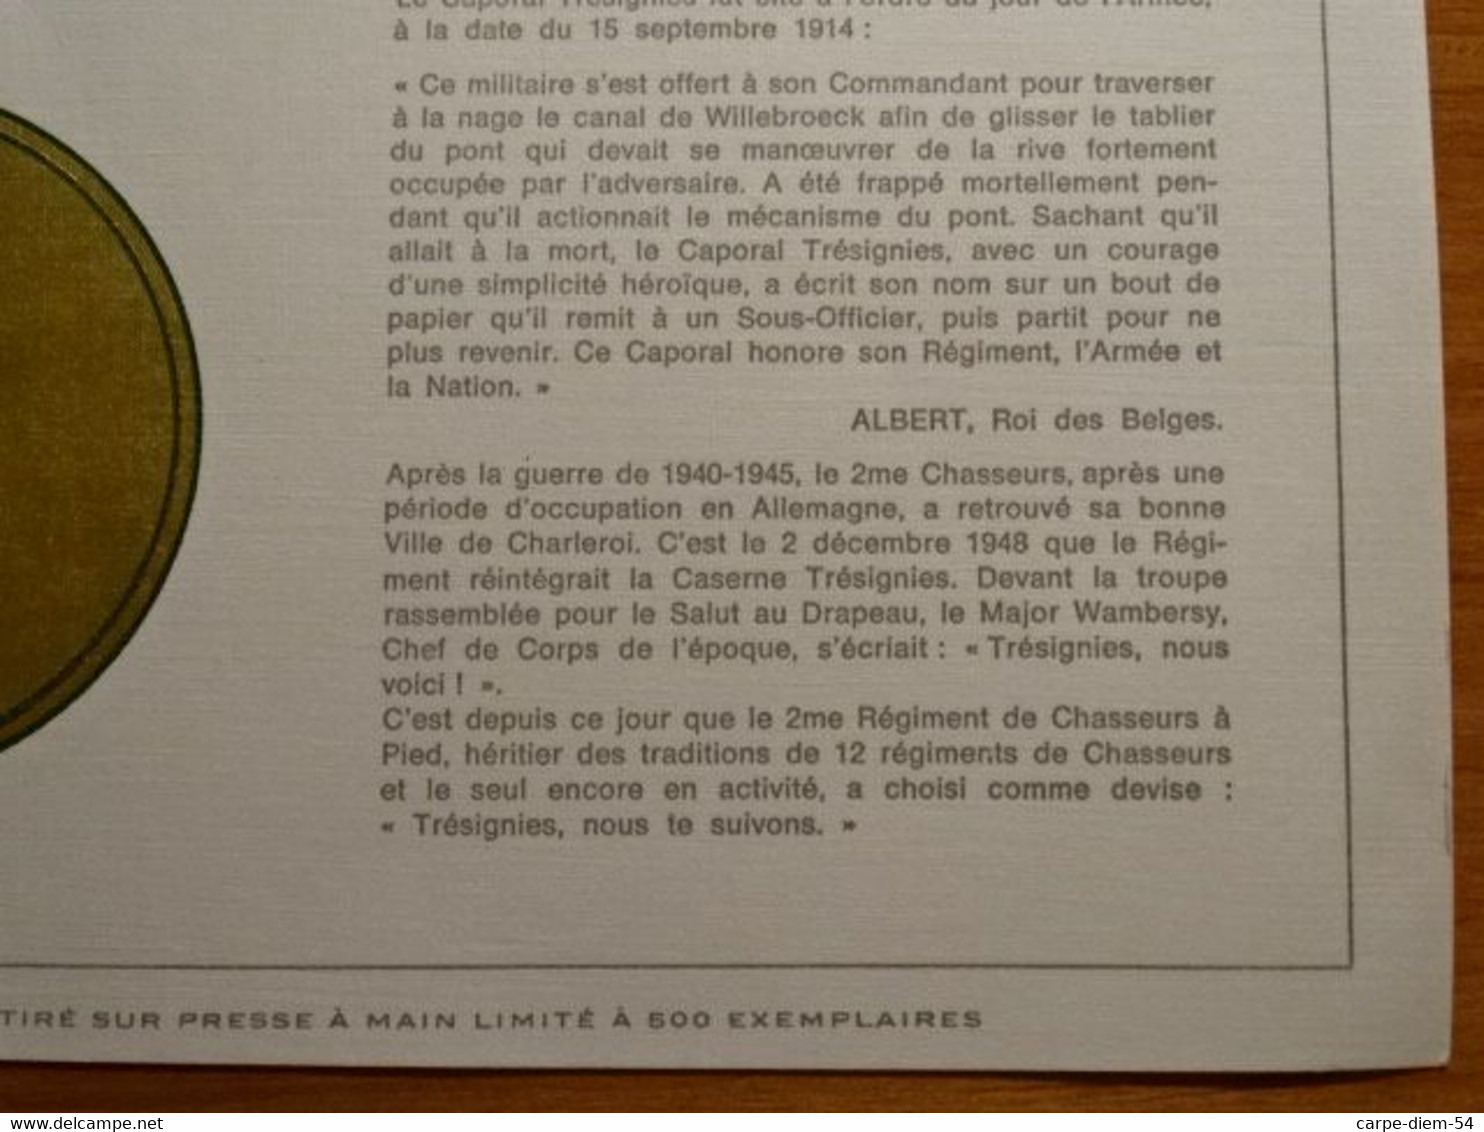 Belgique - Feuillet De Luxe - Caporal L. Tresignies - Heros National - 26/08/1914 - Feuillets De Luxe [LX]